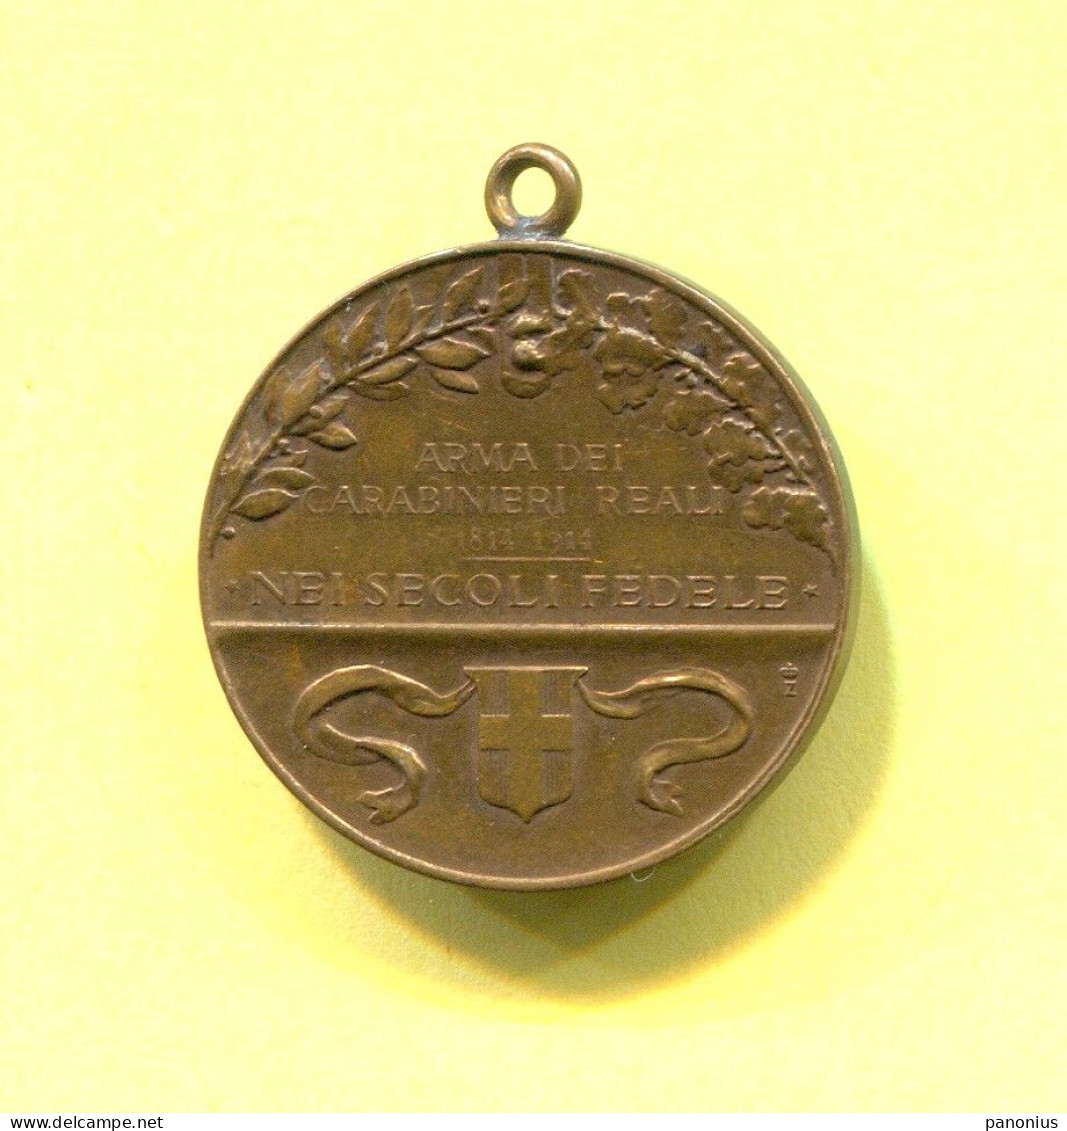 Kingdom Of Italy - Vittorio Emanuele I & III, Arma Dei Carabinieri Reali 1814 - 1914, Medal By E. Tadolini - Italie